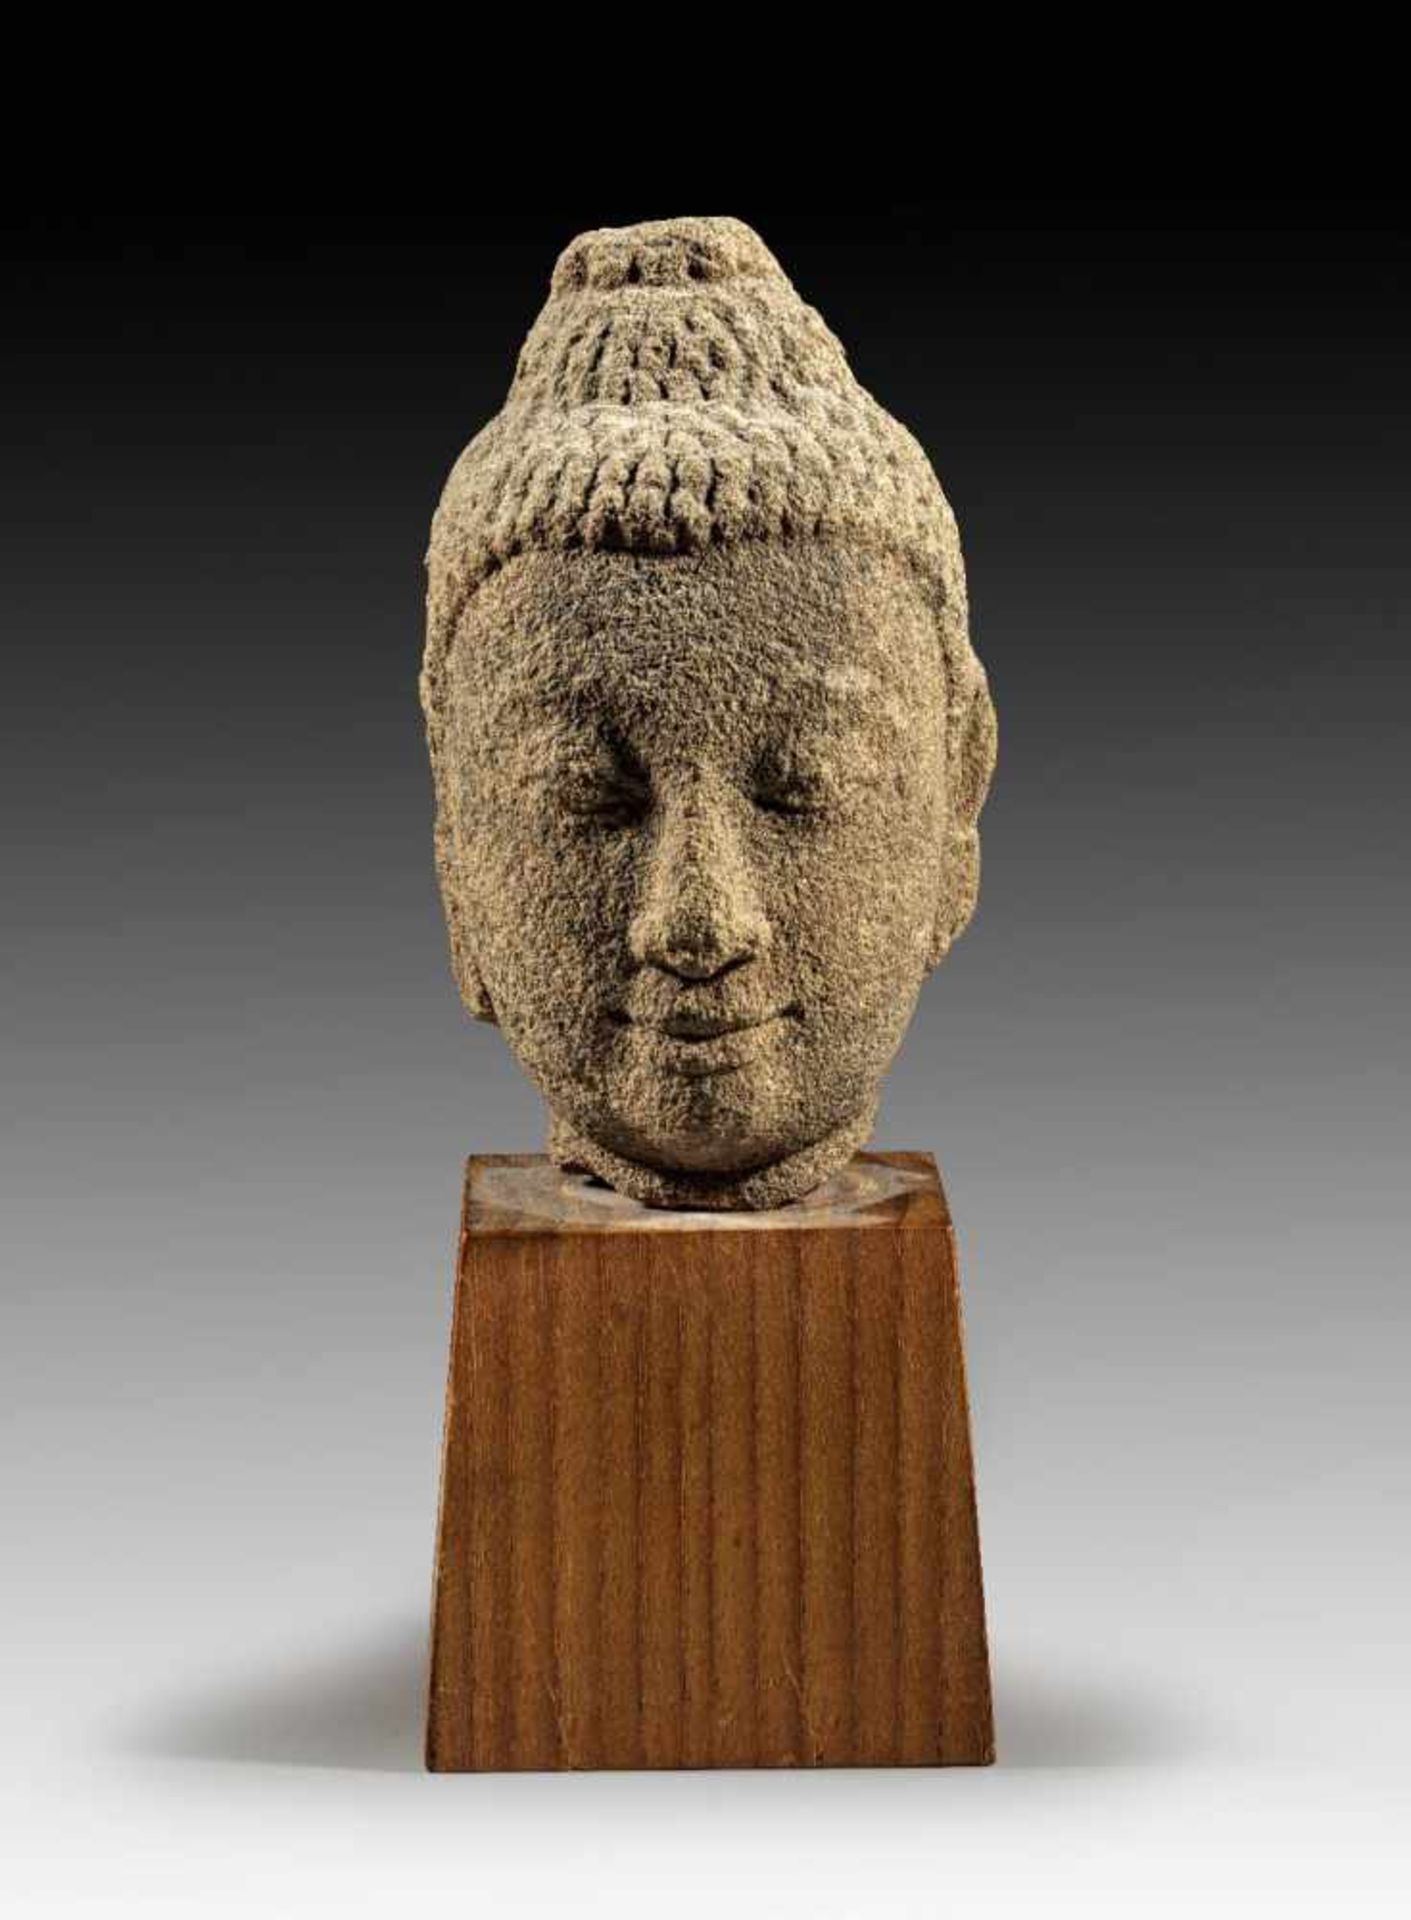 Kopf des Buddha. Thailand, Ayutthaya-Periode, ca. 16. Jh. n. Chr. H 15,1cm. Hellbrauner Sandstein.